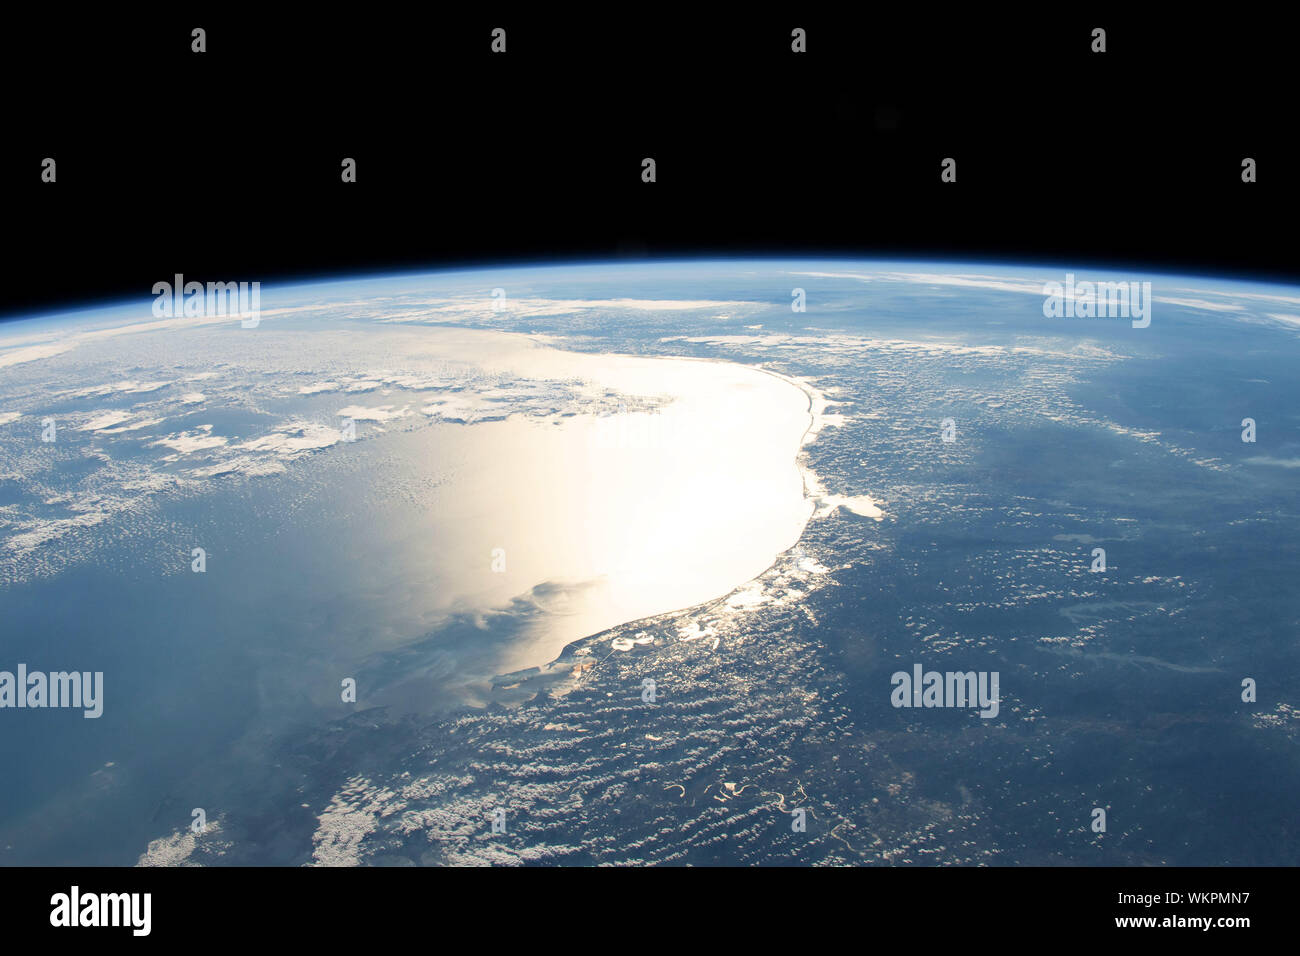 Gulf of Mexico, coasts of Texas and Louisiana, from ISS, 254 miles above earth, January 30, 2019. By NASA/DPA Stock Photo